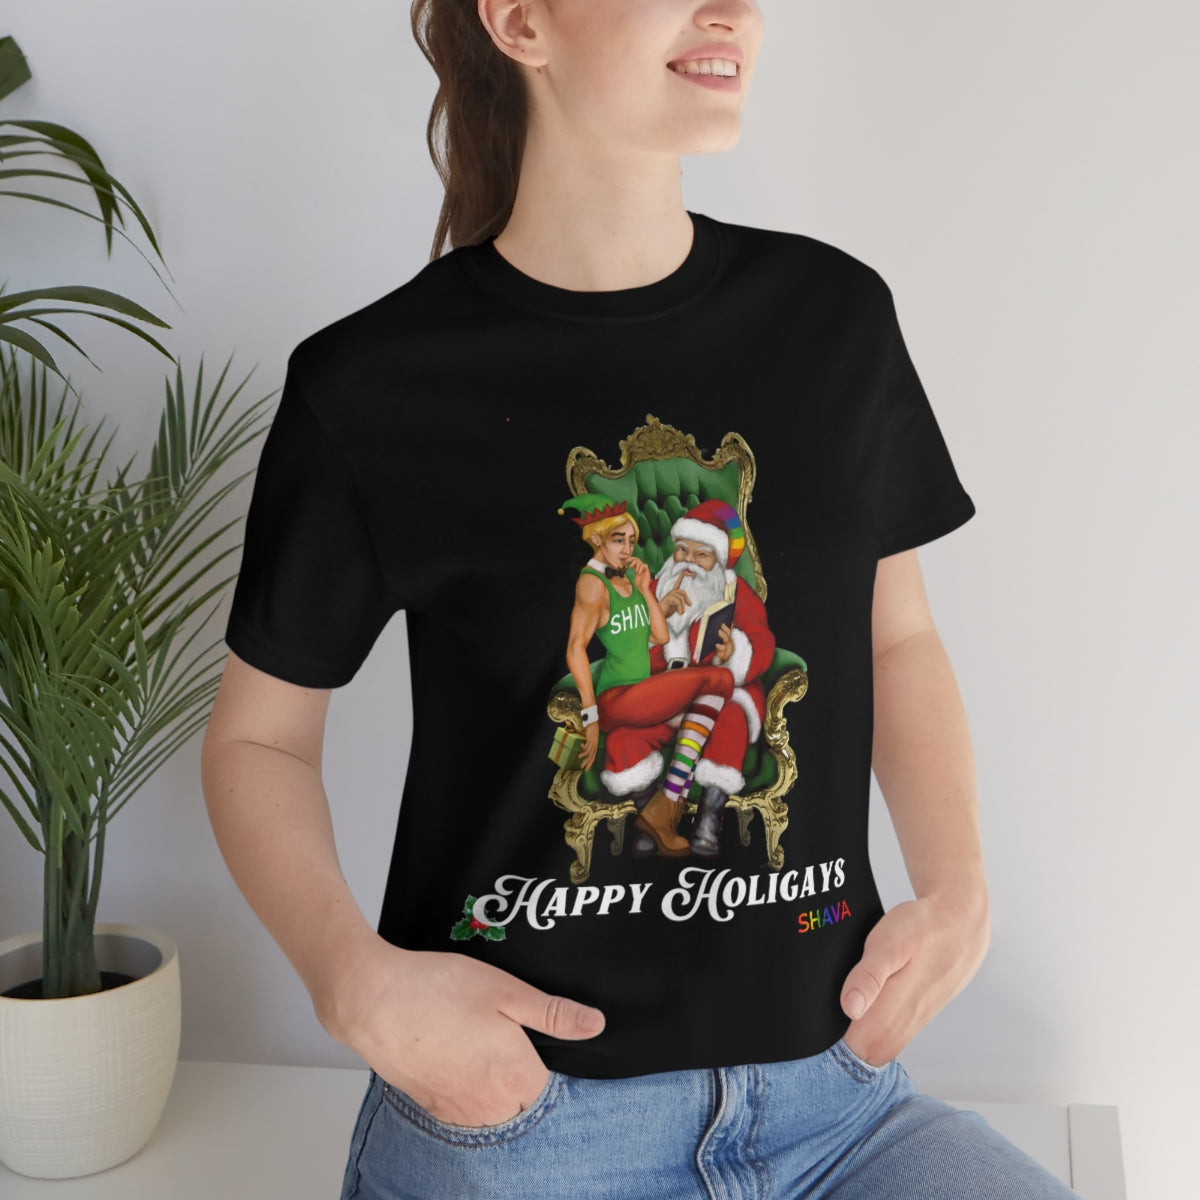 Classic Unisex Christmas LGBTQ Holigays T-Shirt - Holigay (White) Printify